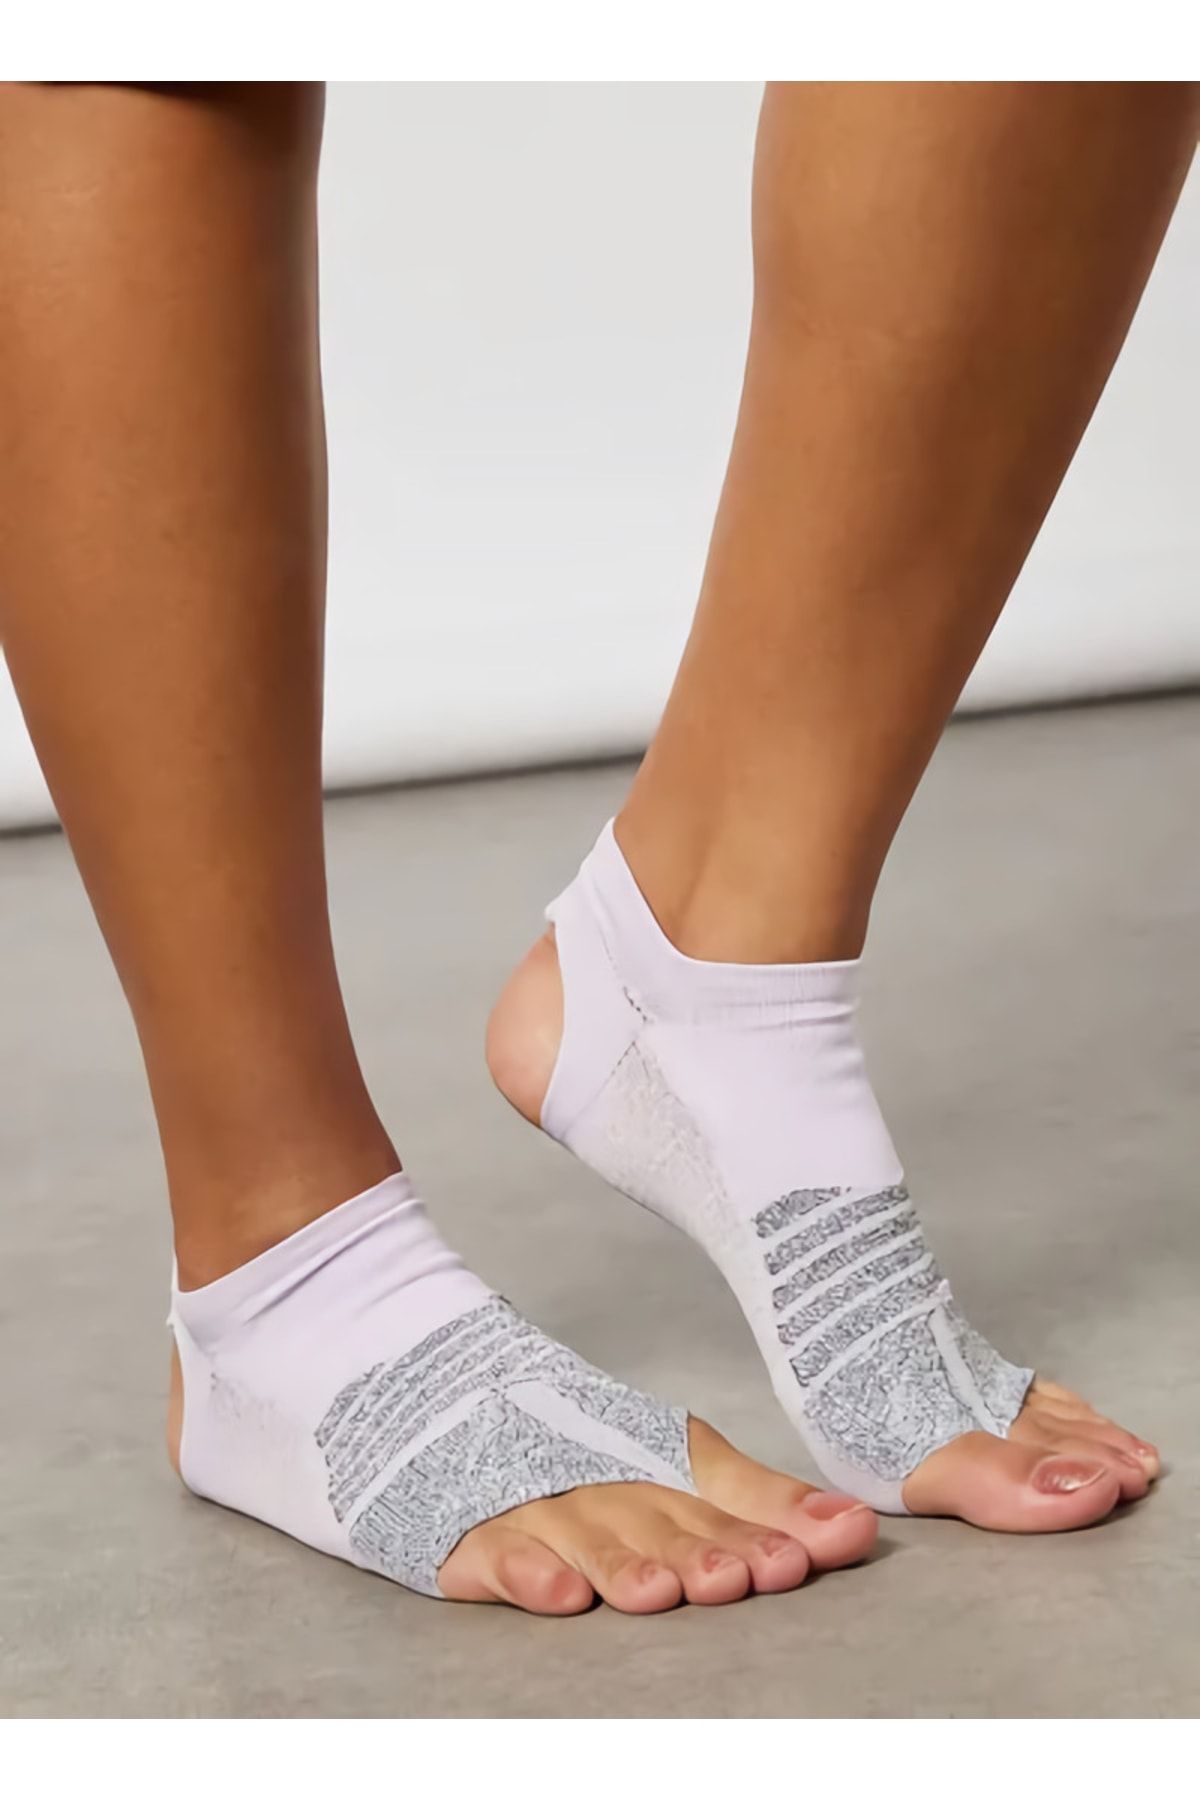 Nike Grip Studio Parmaksız Spor Çorap Sx7827